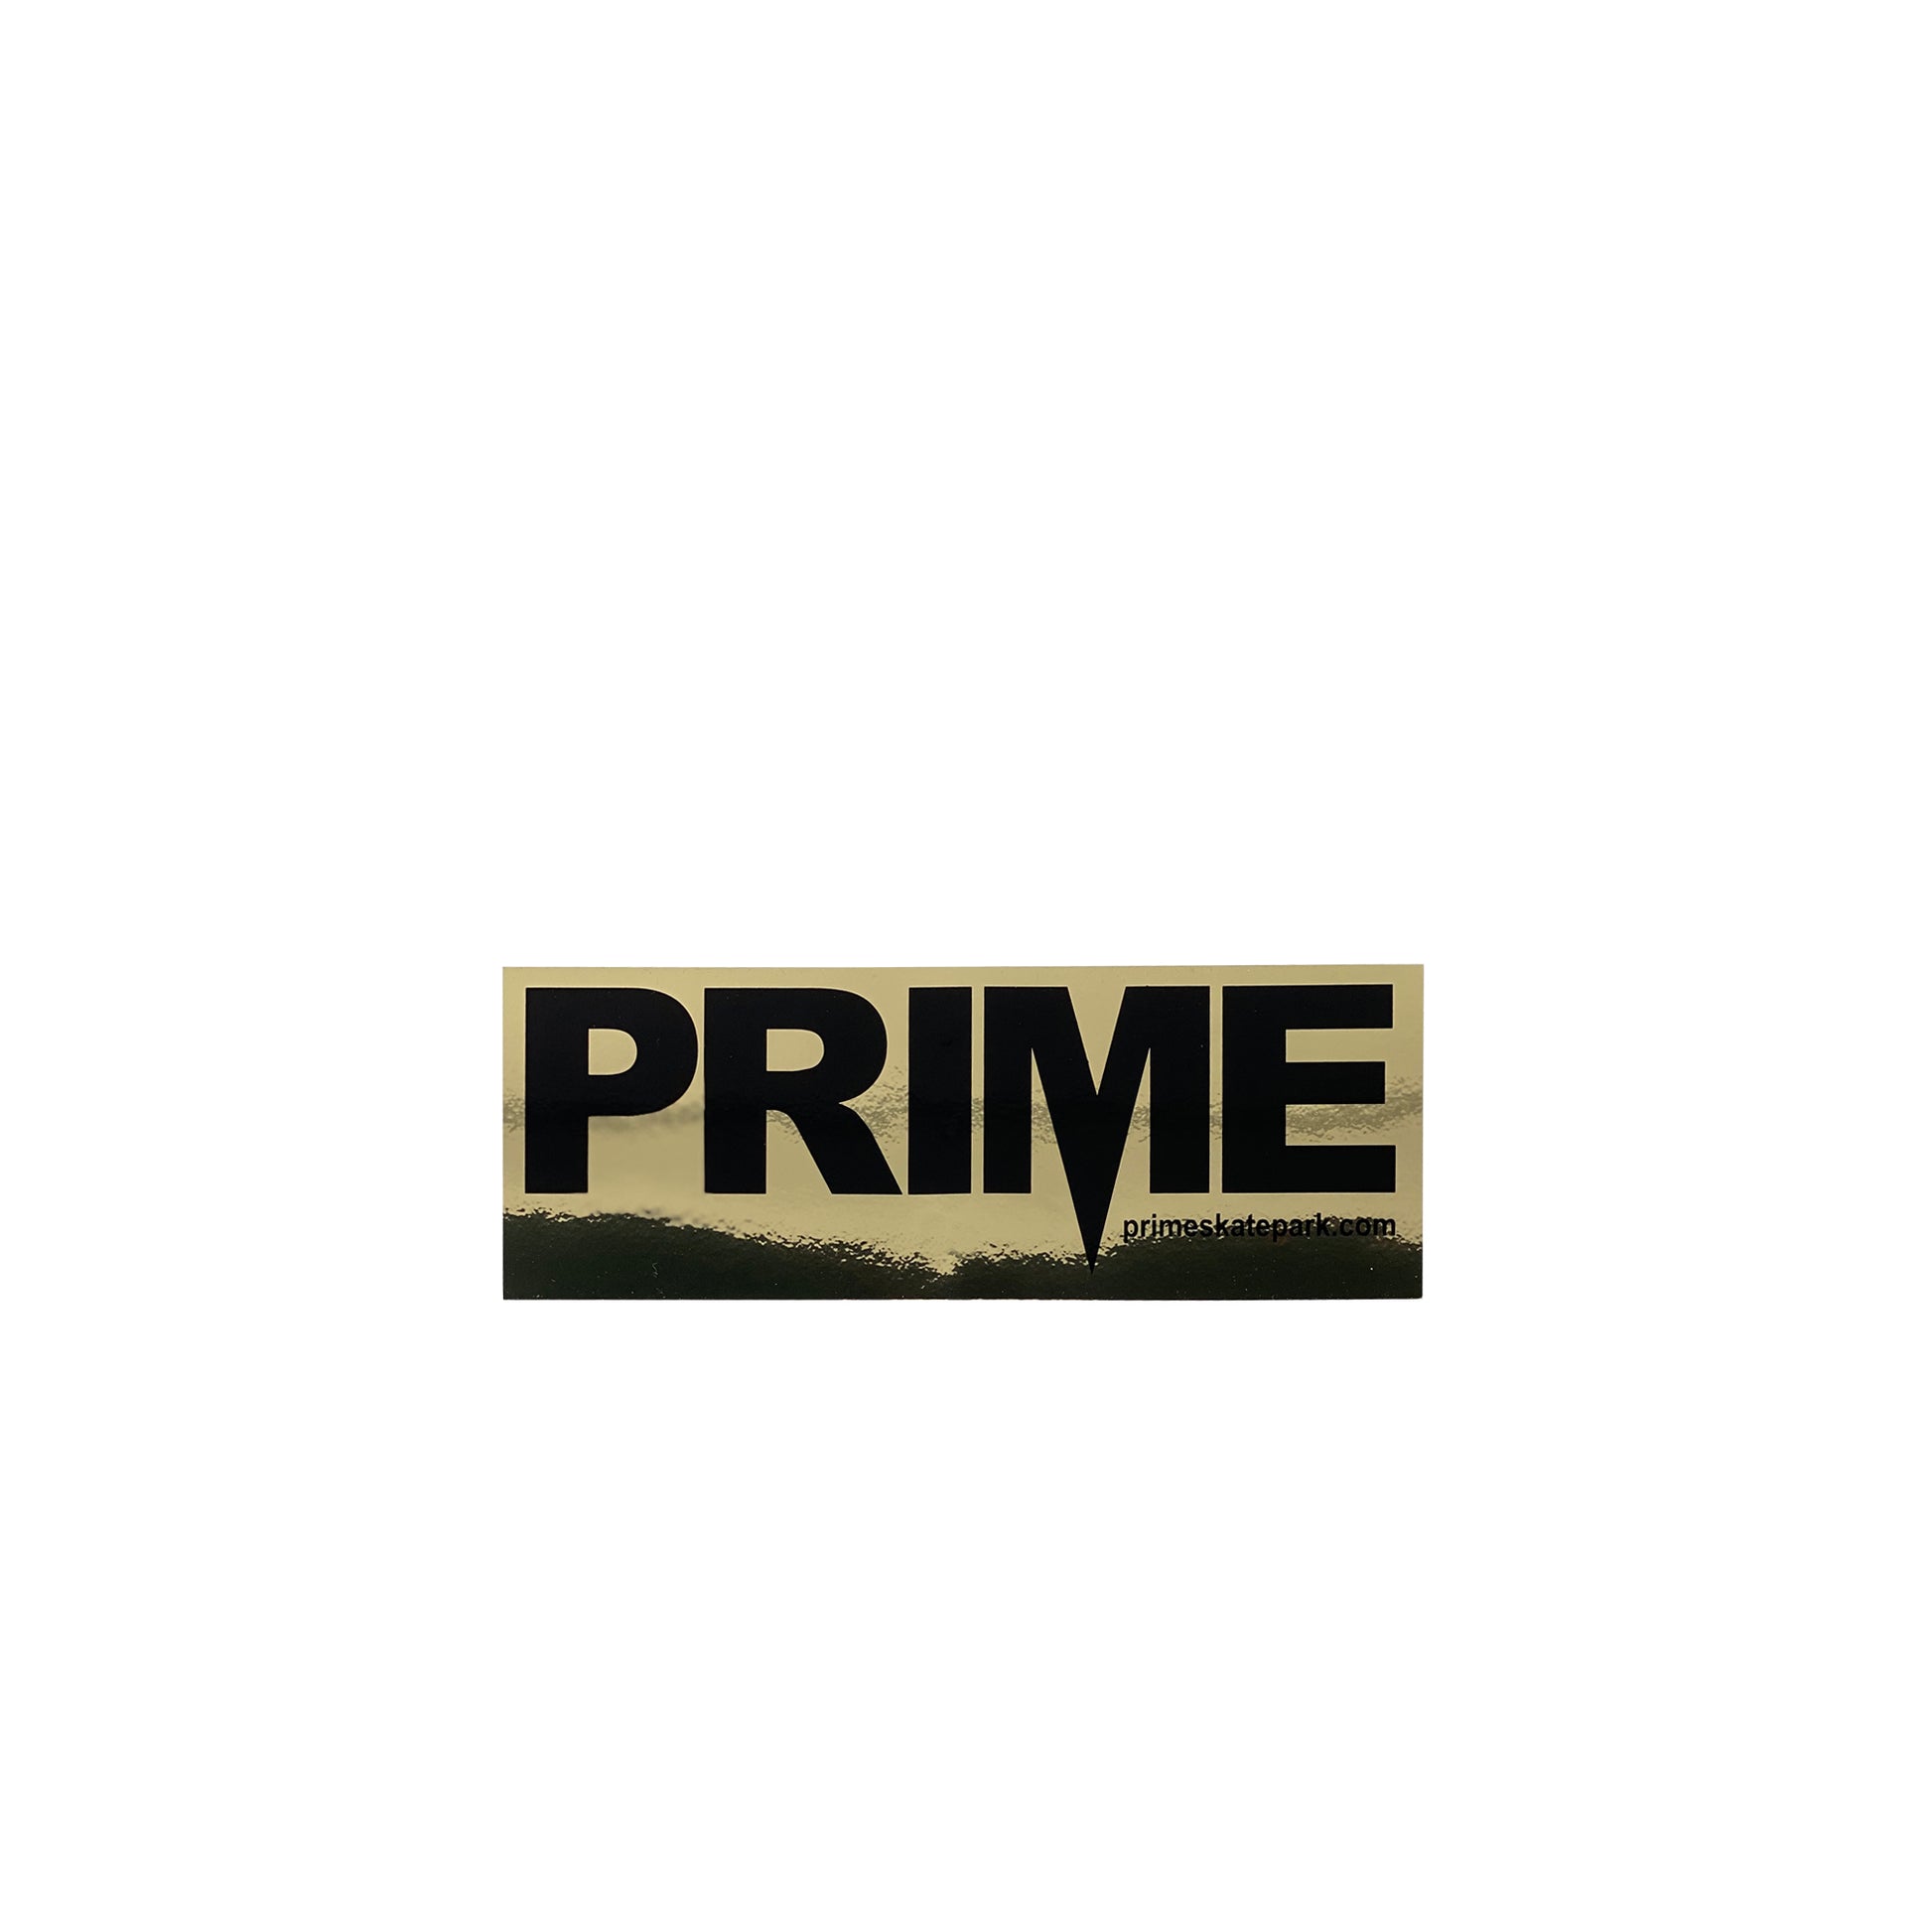 Prime Delux OG SP Sticker M - Black / Foil Gold - Prime Delux Store